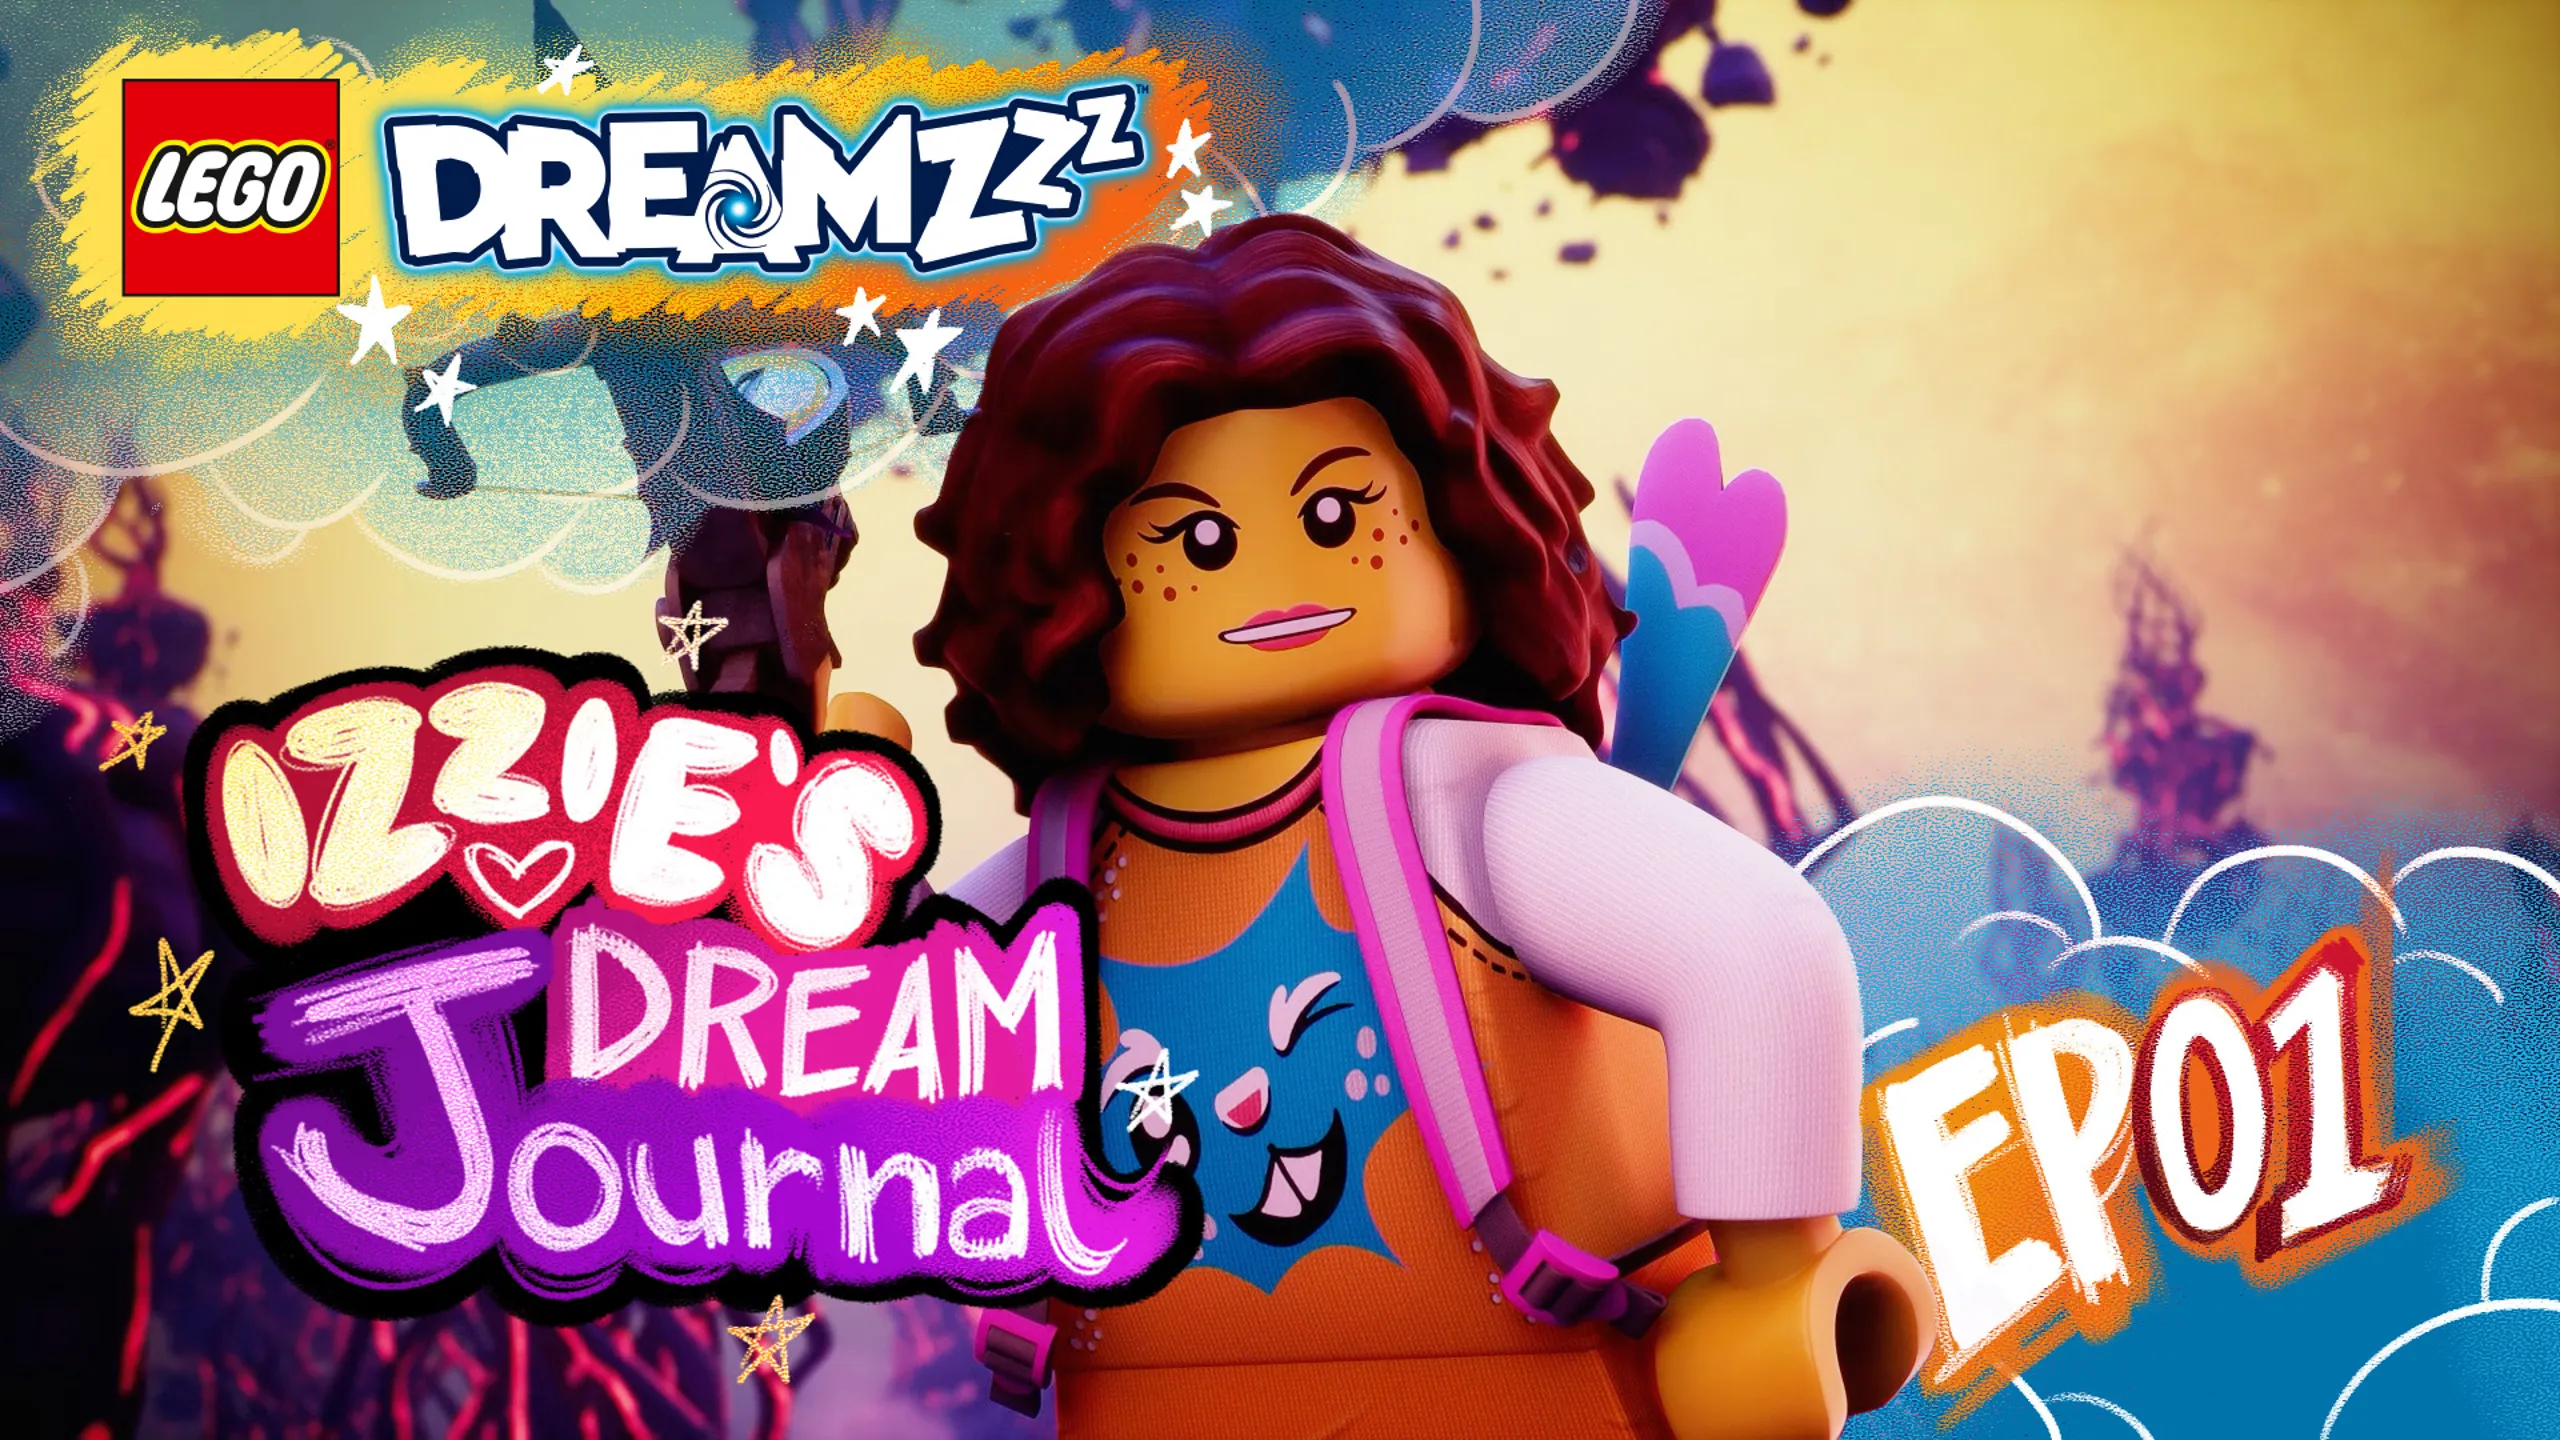 LEGO® DREAMZZZ - IZZIE'S DREAM Journal - EP01